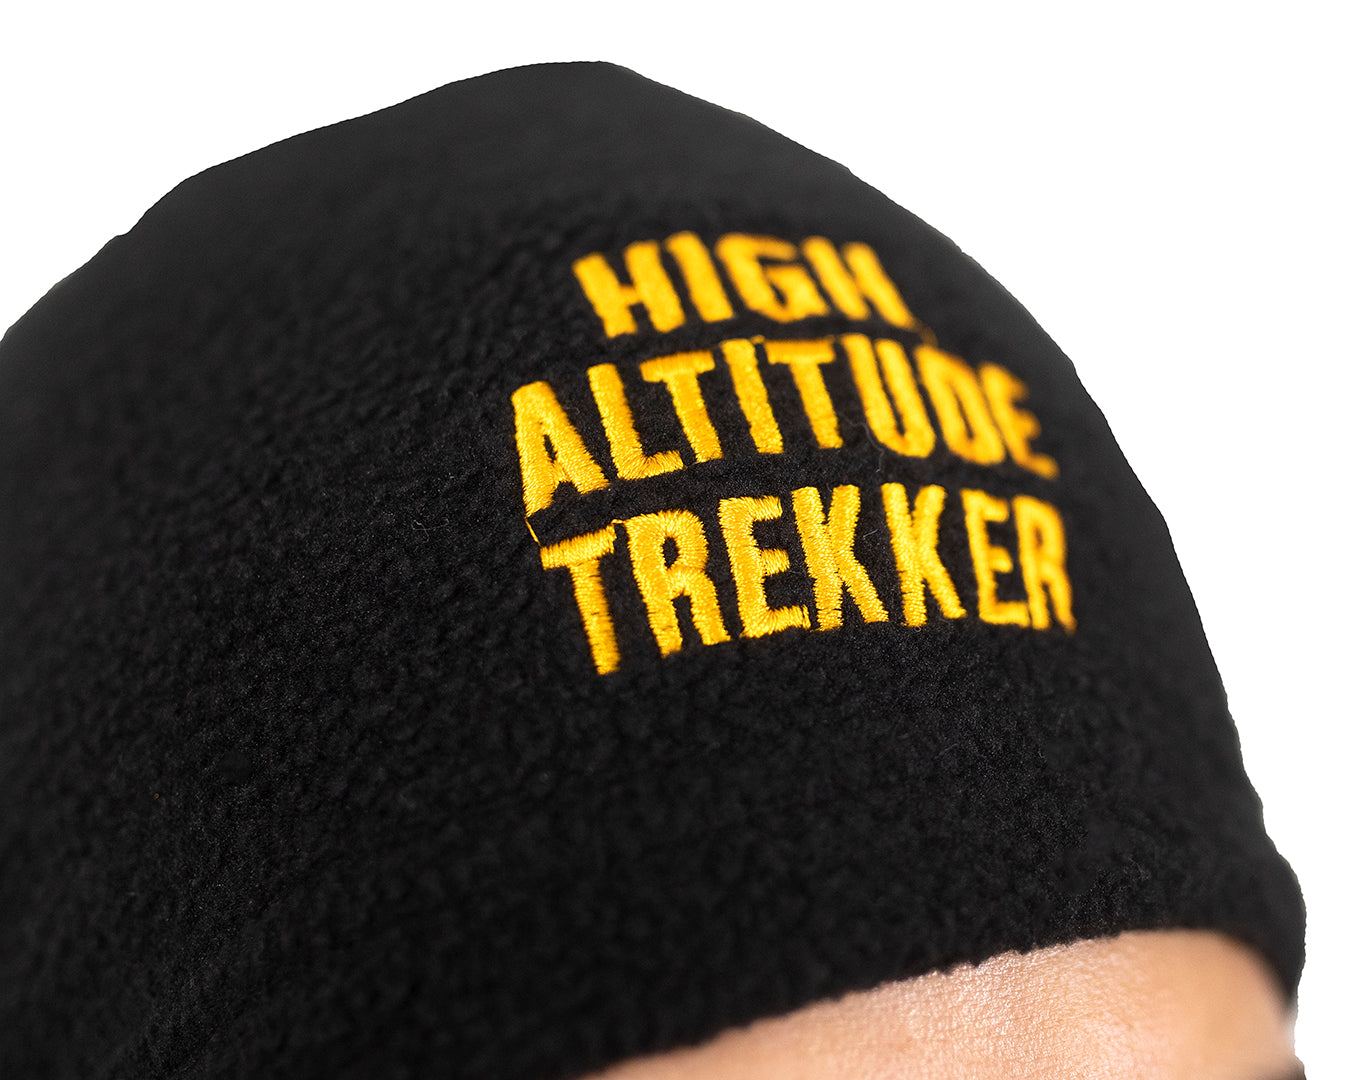 Crosstrek Fleece Cap for Trek Adventures: Warmth and Comfort In Low Temperatures